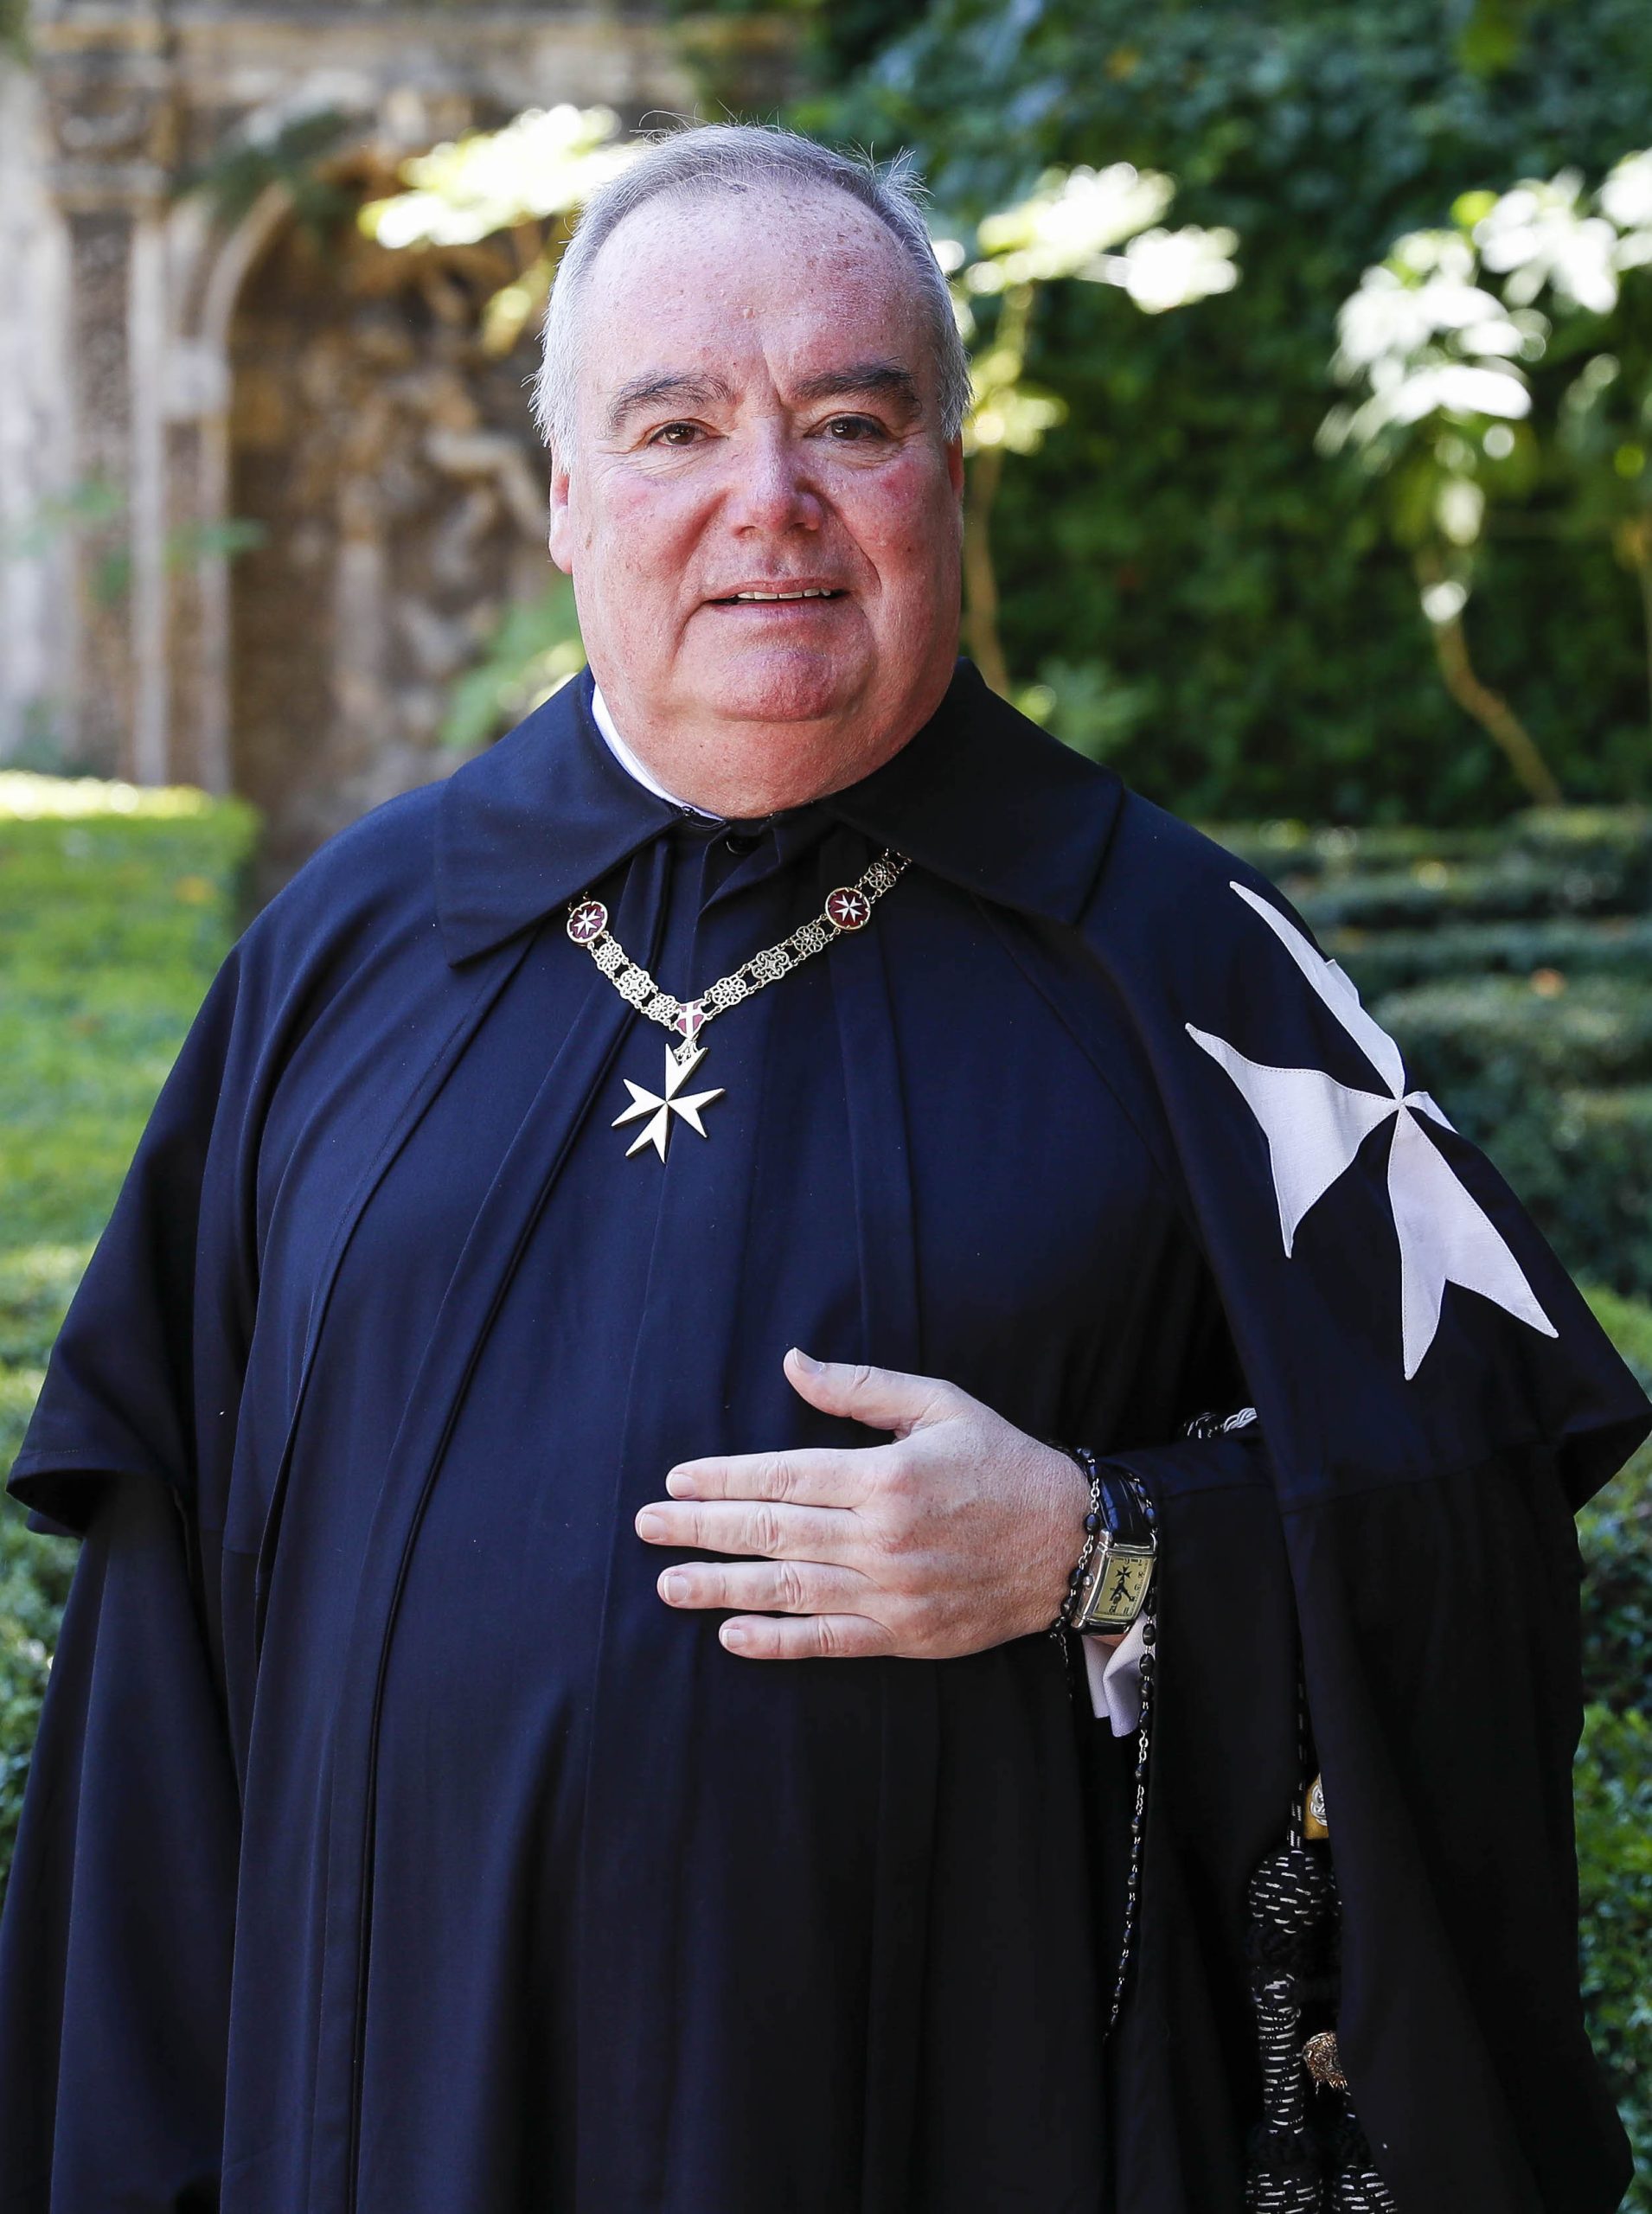 Grand Master of the Order of Malta Fra' John Dunlap